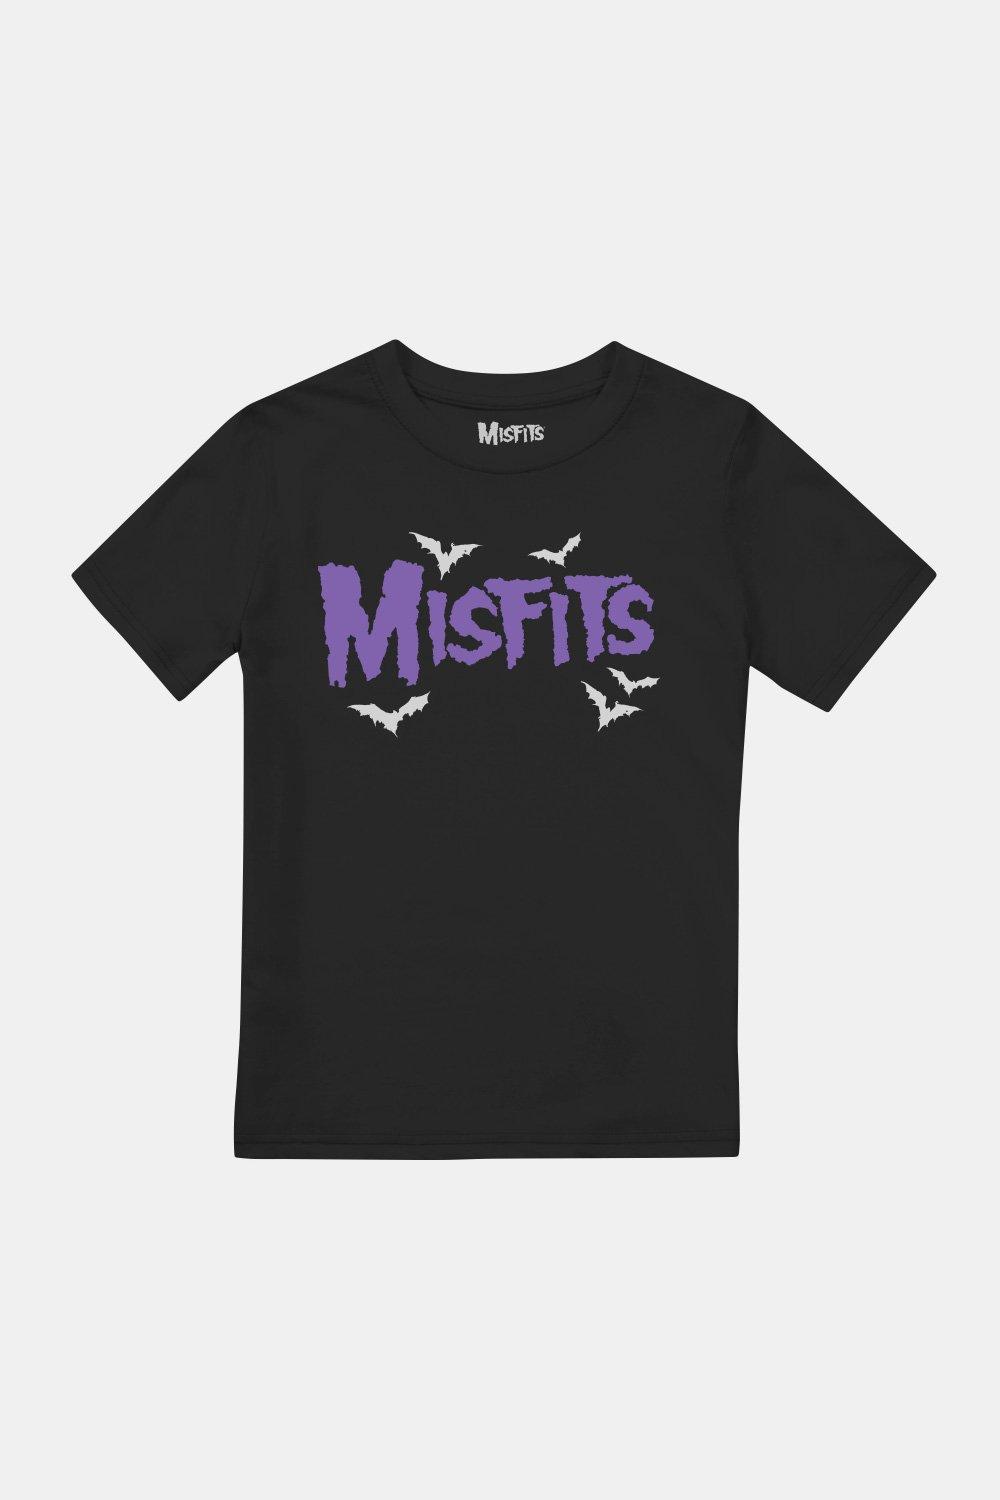 Bats Boys T-Shirt